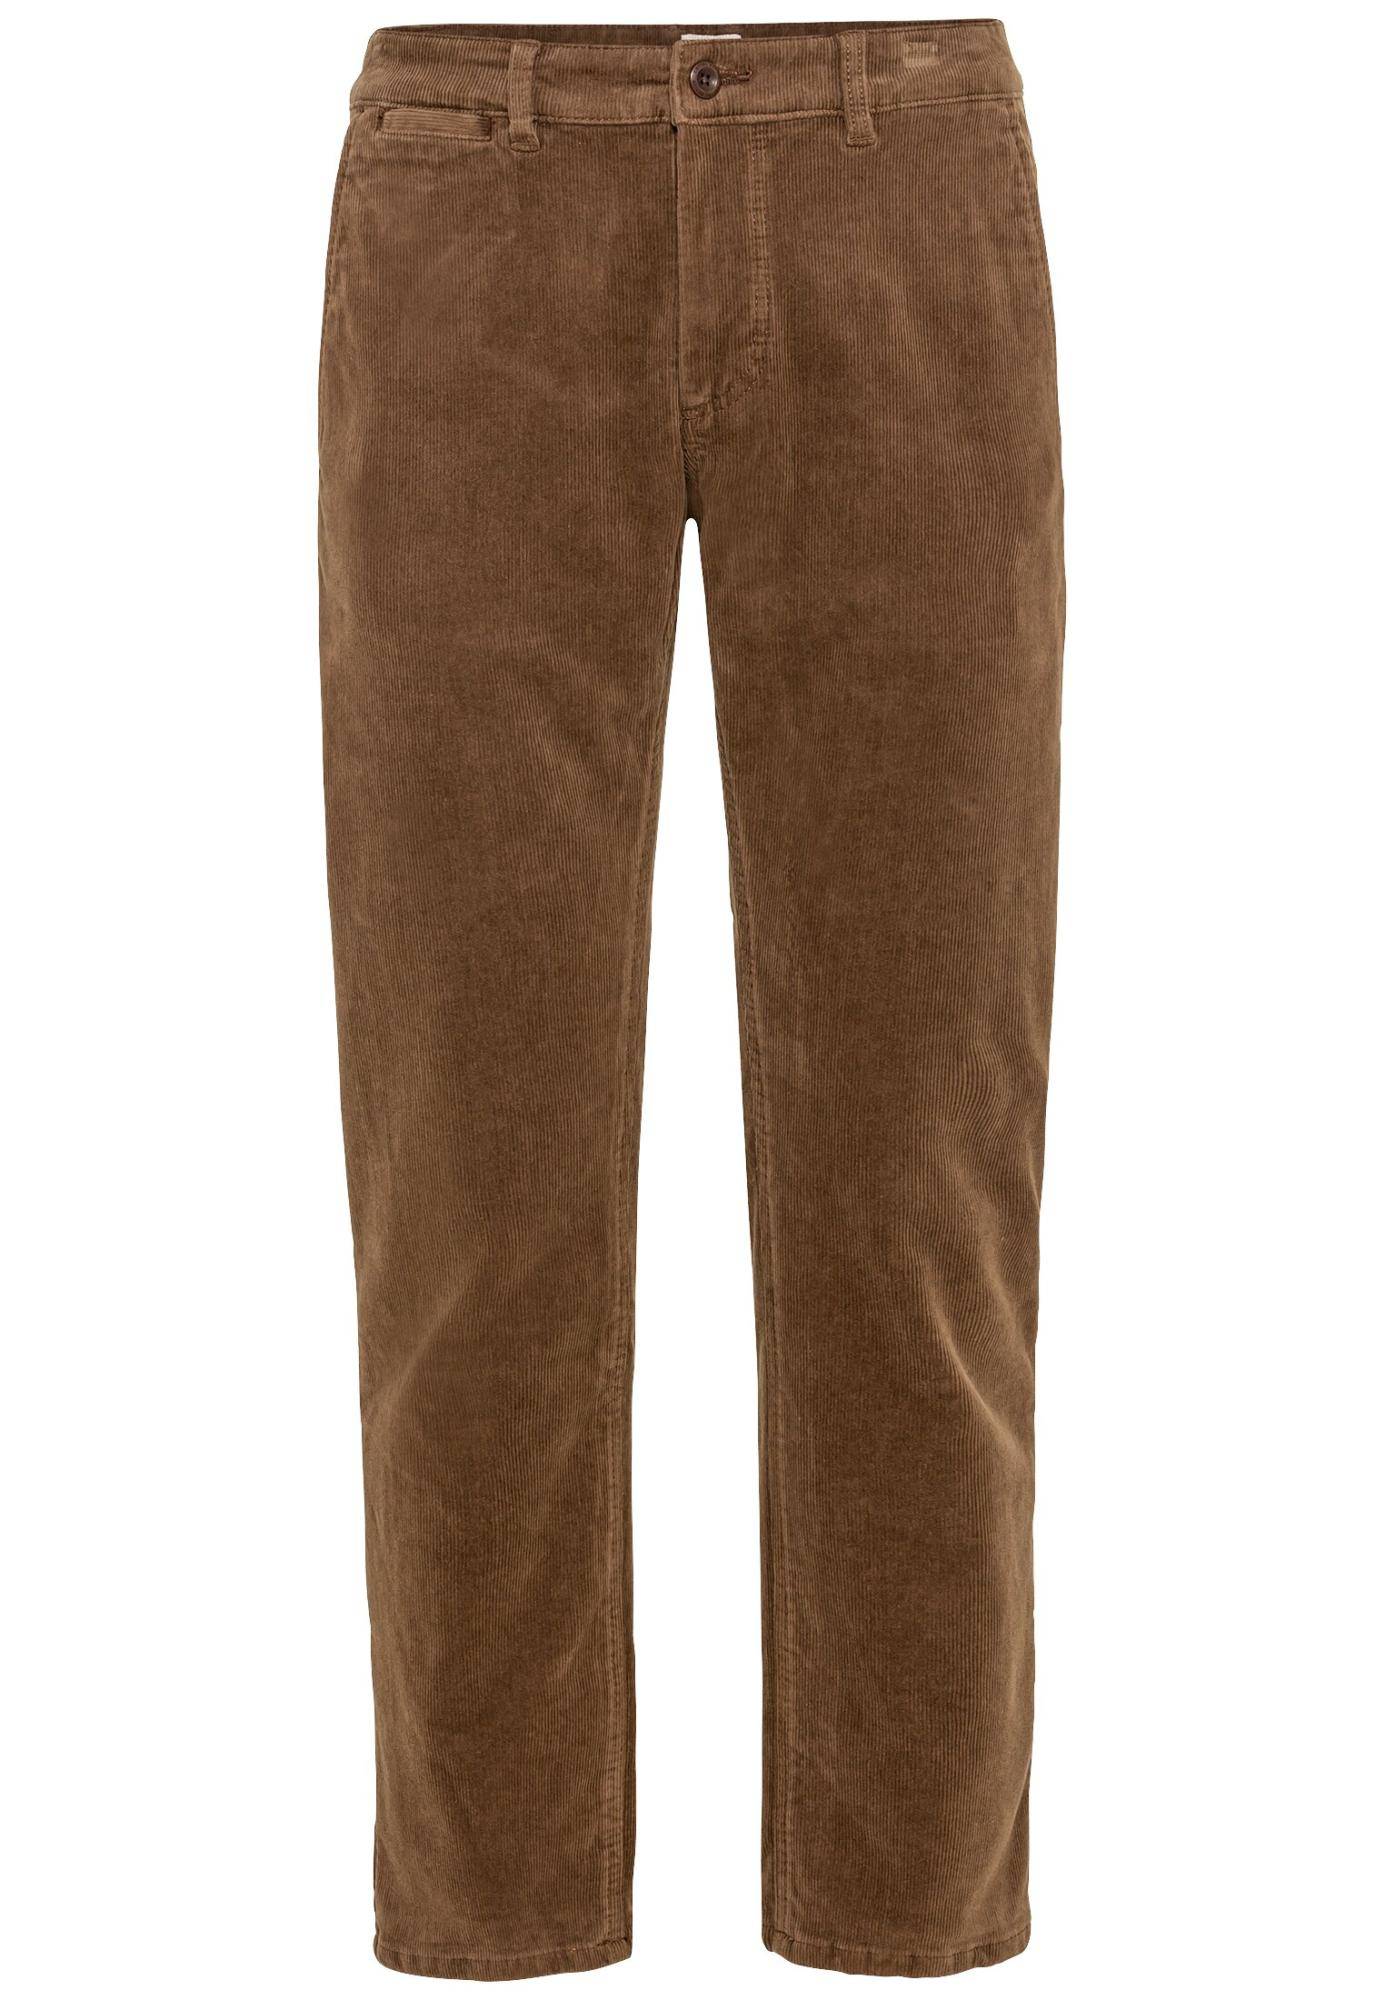 Мужские брюки Camel Active, коричневые, цвет коричневый, размер 34 - фото 1